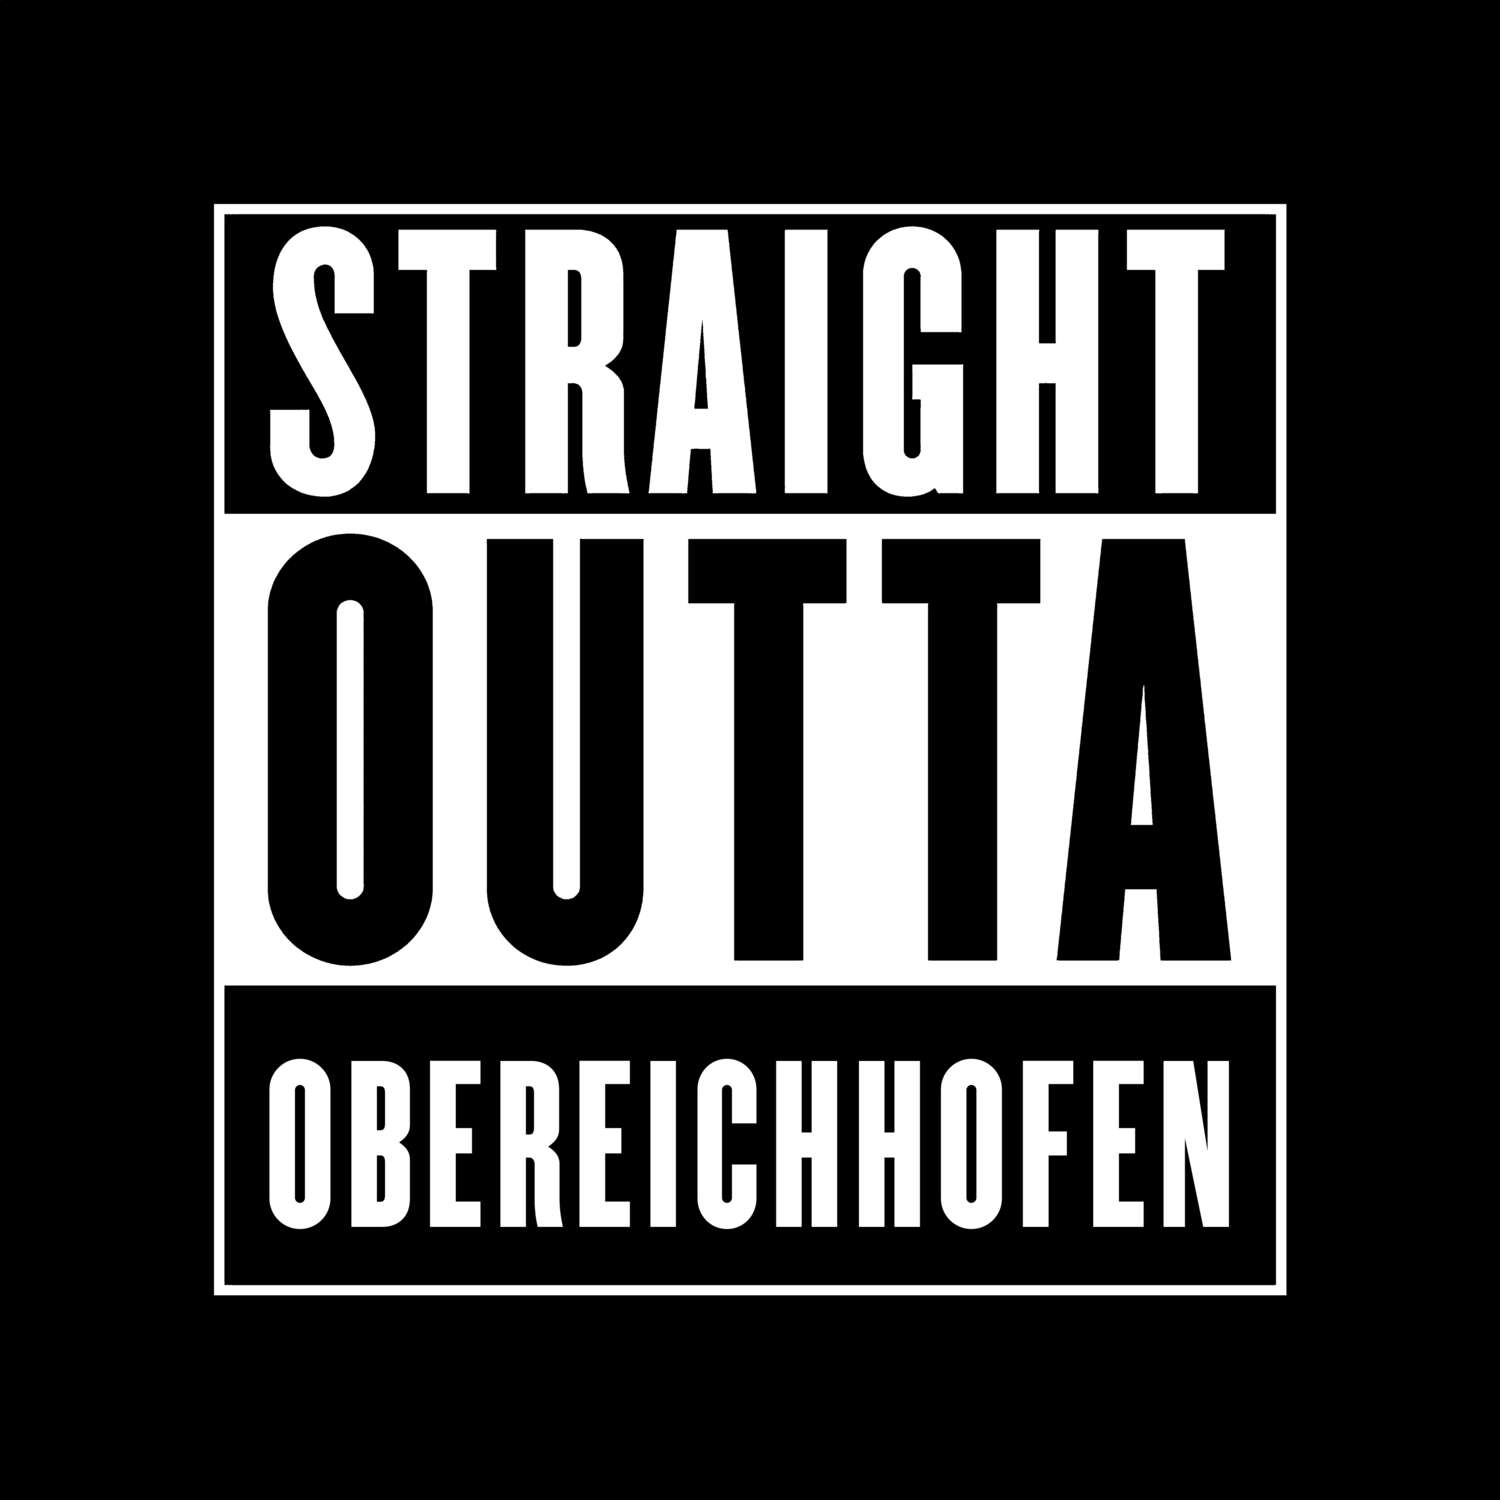 Obereichhofen T-Shirt »Straight Outta«